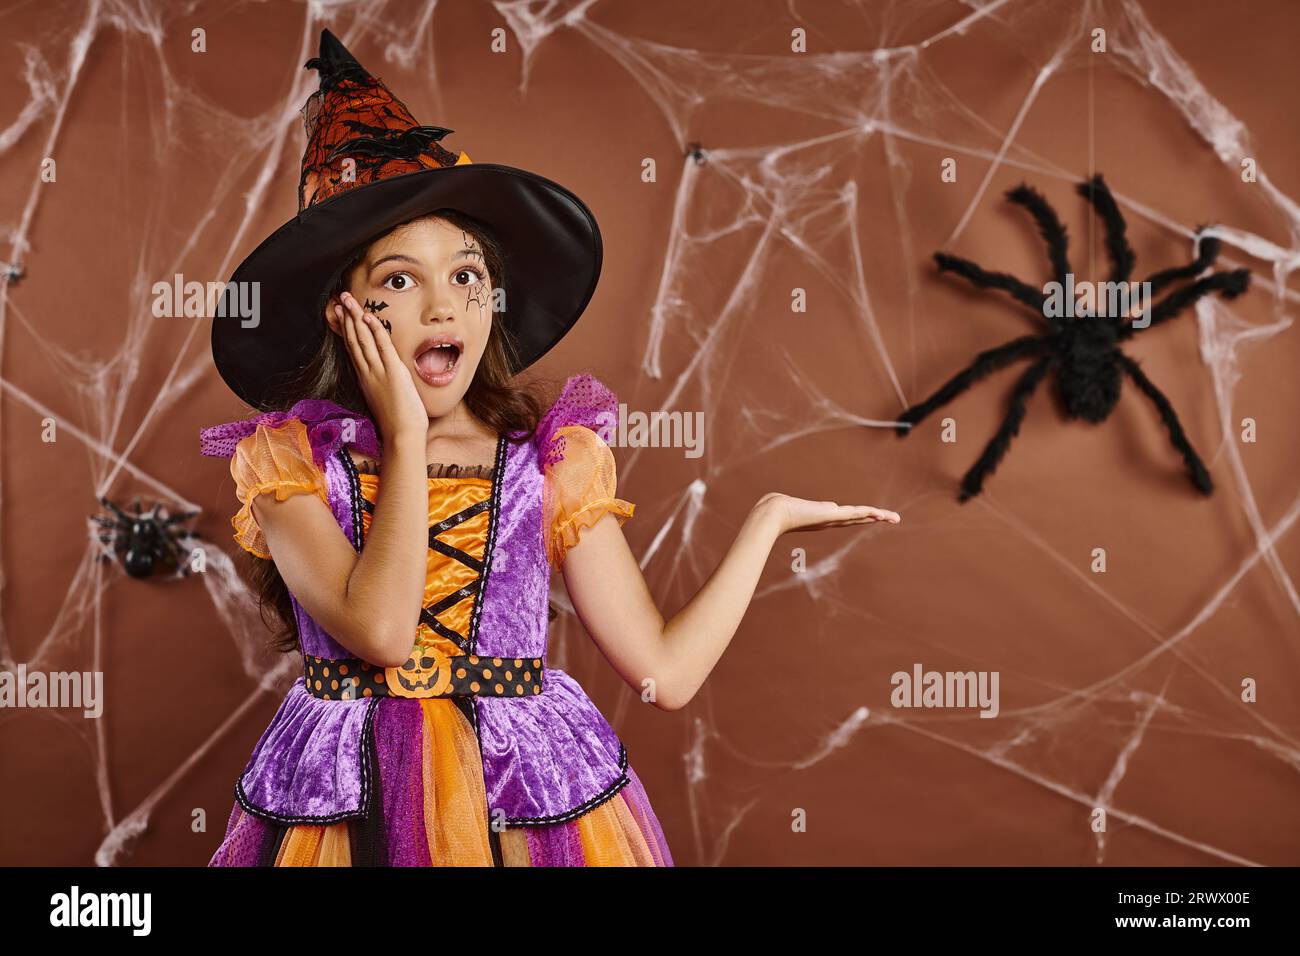 Fille émerveillée dans le chapeau de sorcière et costume d'Halloween pointant vers la fausse araignée sur fond brun, effrayante Banque D'Images